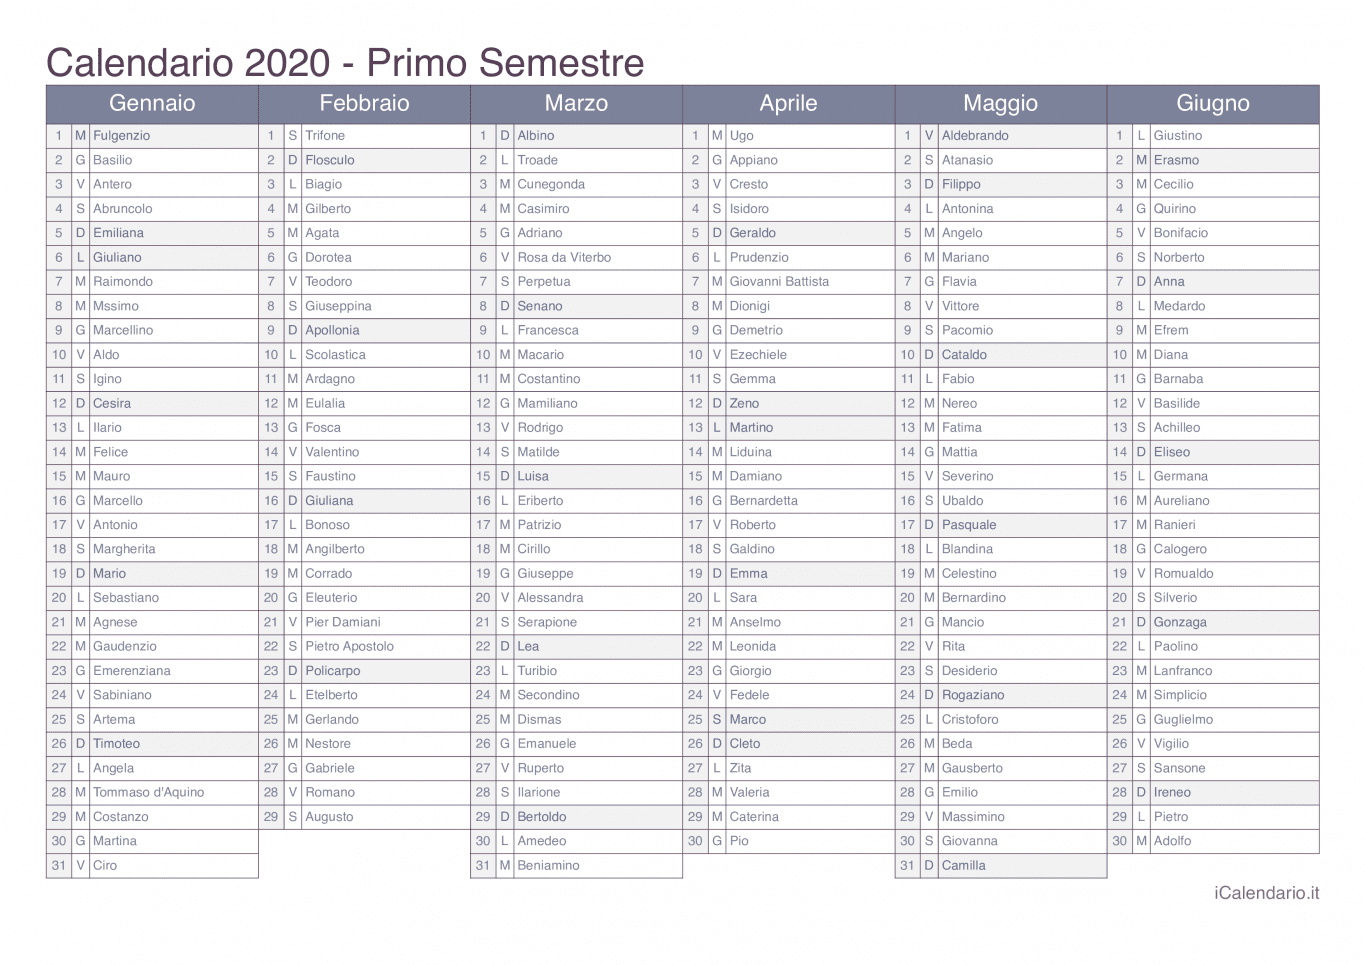 Calendario semestrale 2020 con santi e festivi - Office